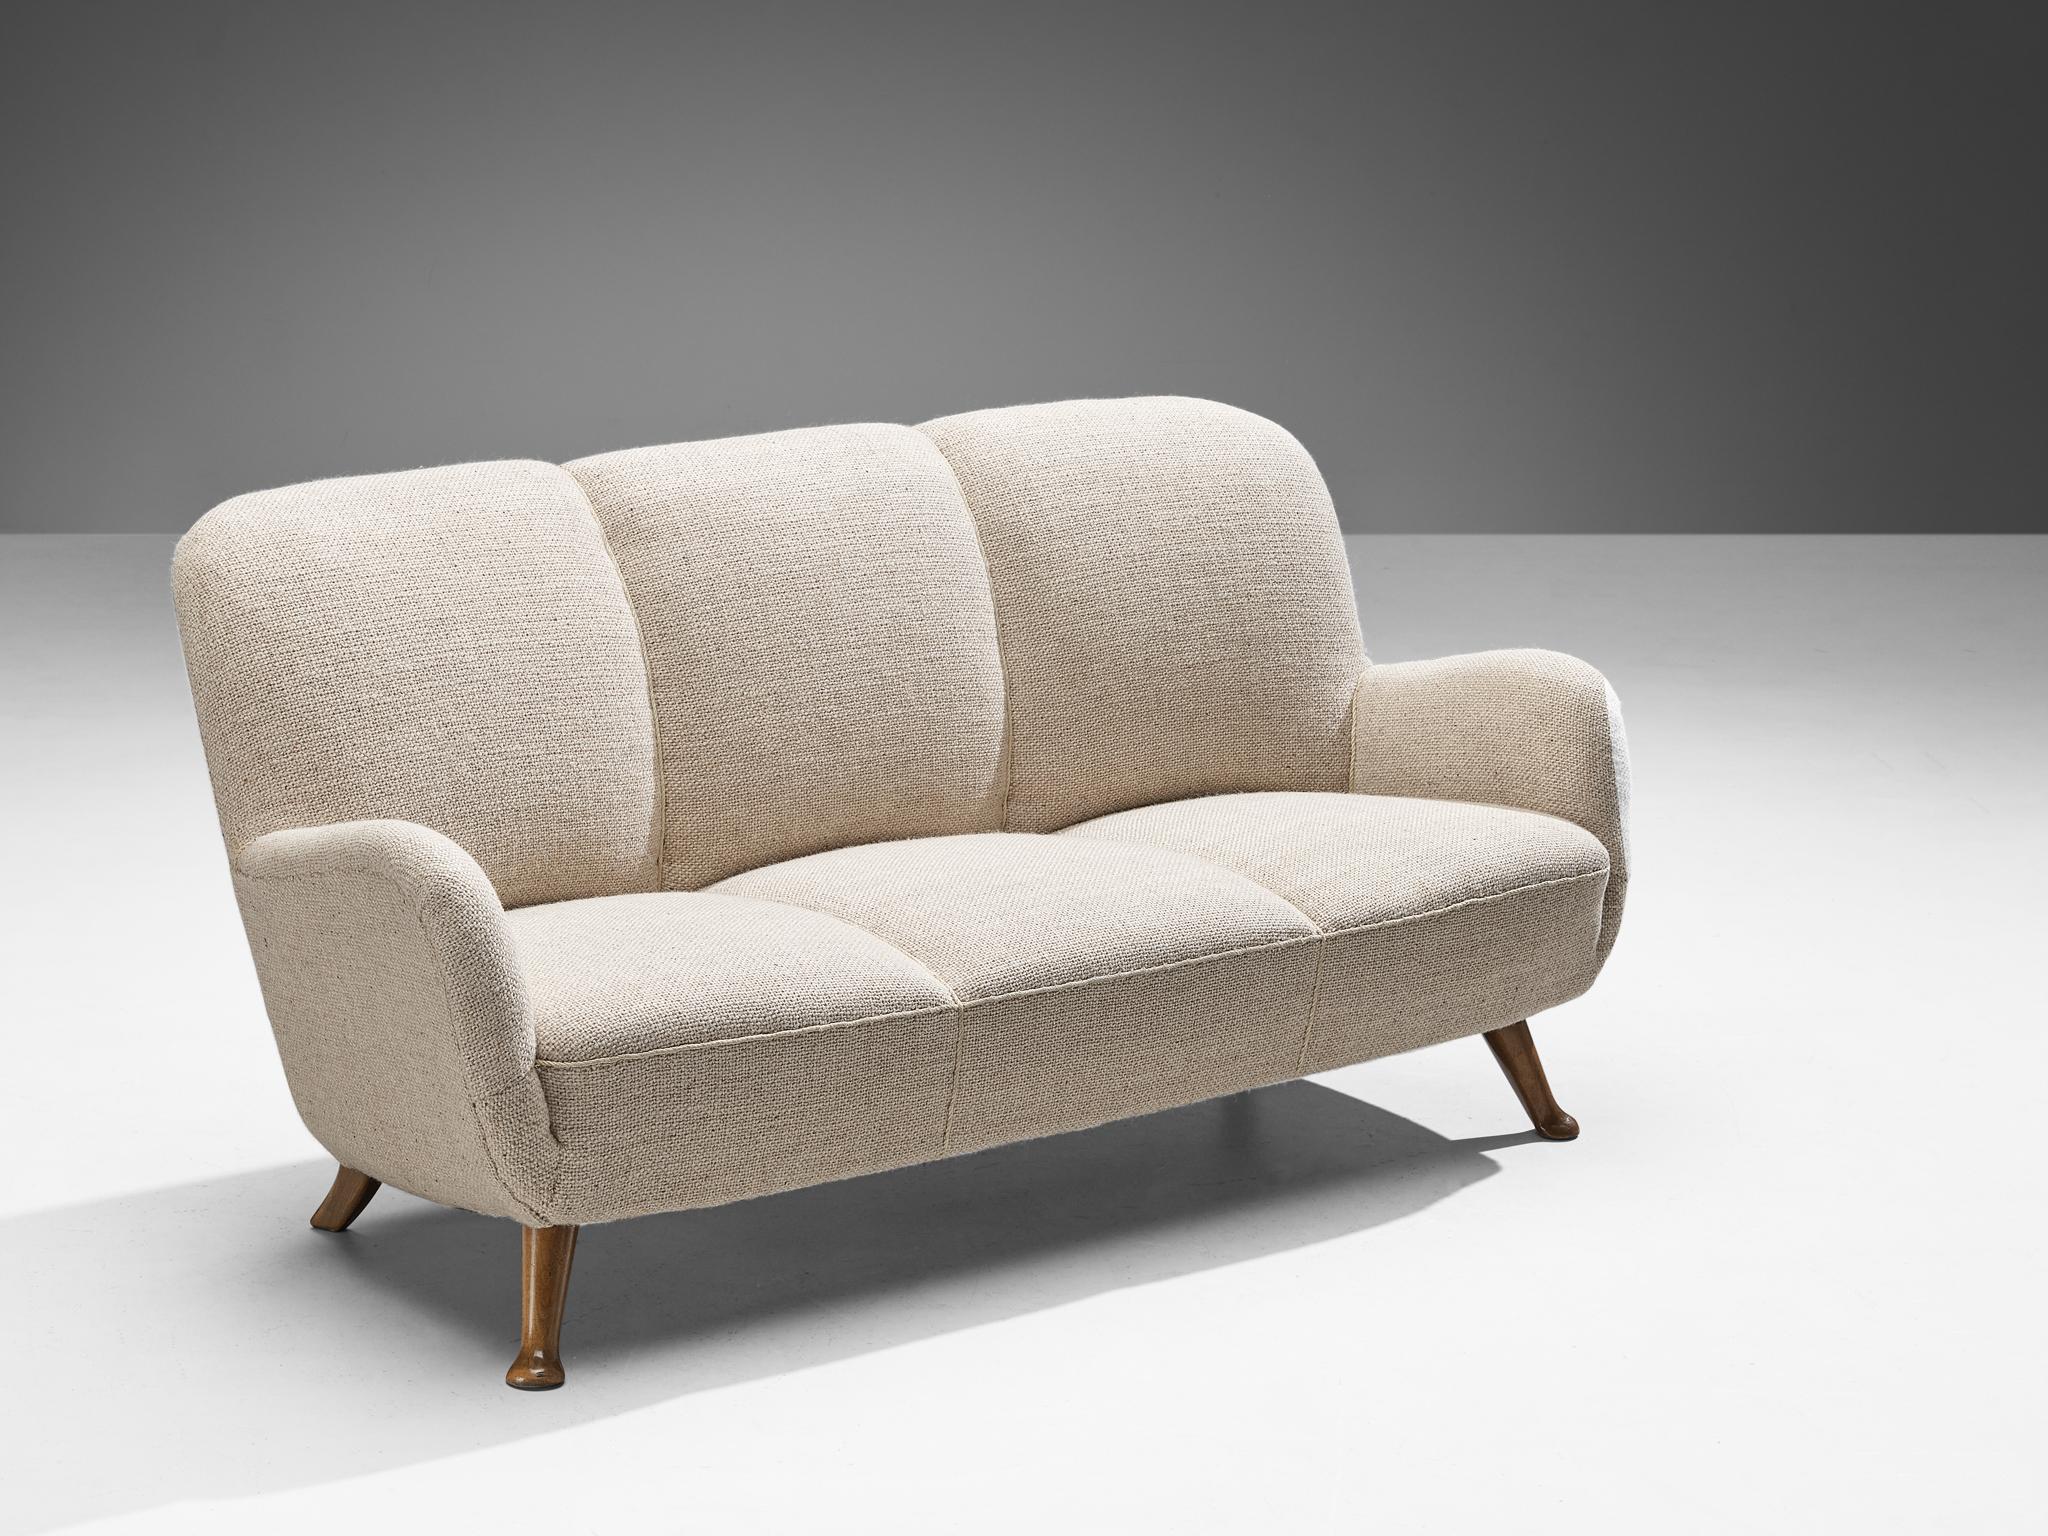 Velvet Berga Mobler Sofa in Beige Wool Upholstery 